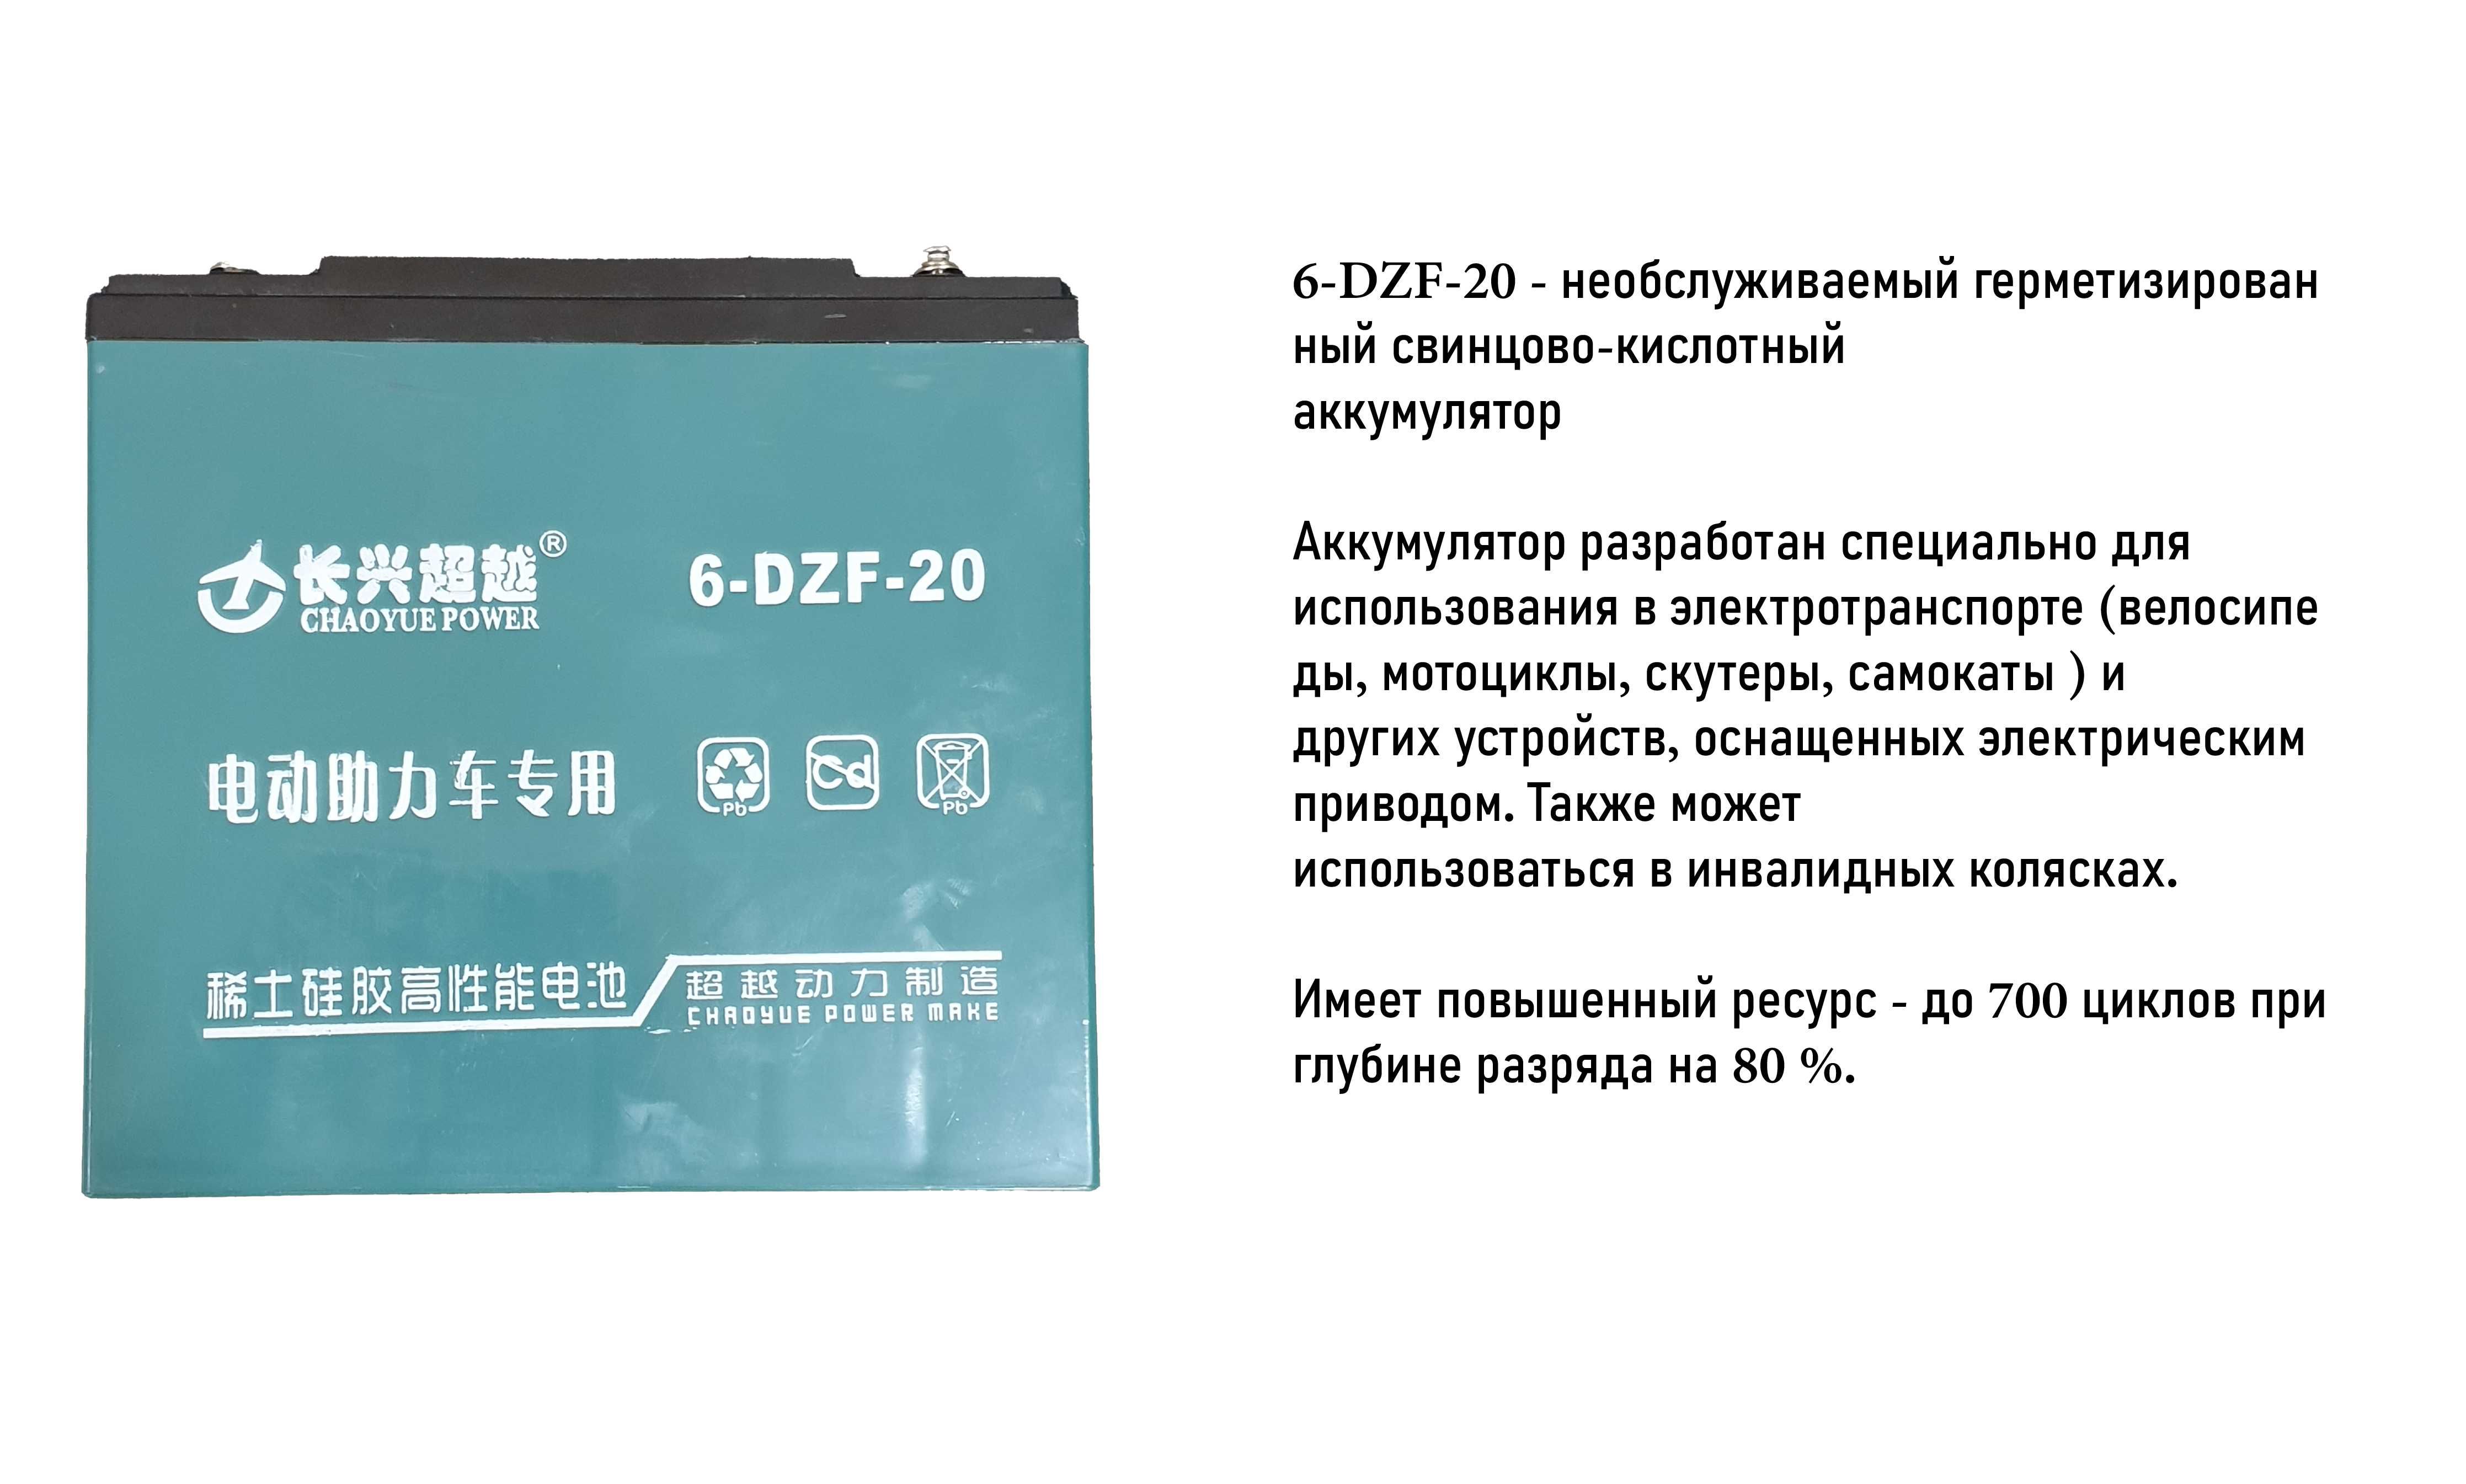 Гелевый аккумулятор CHAOYUE POWER 6-DZF-20